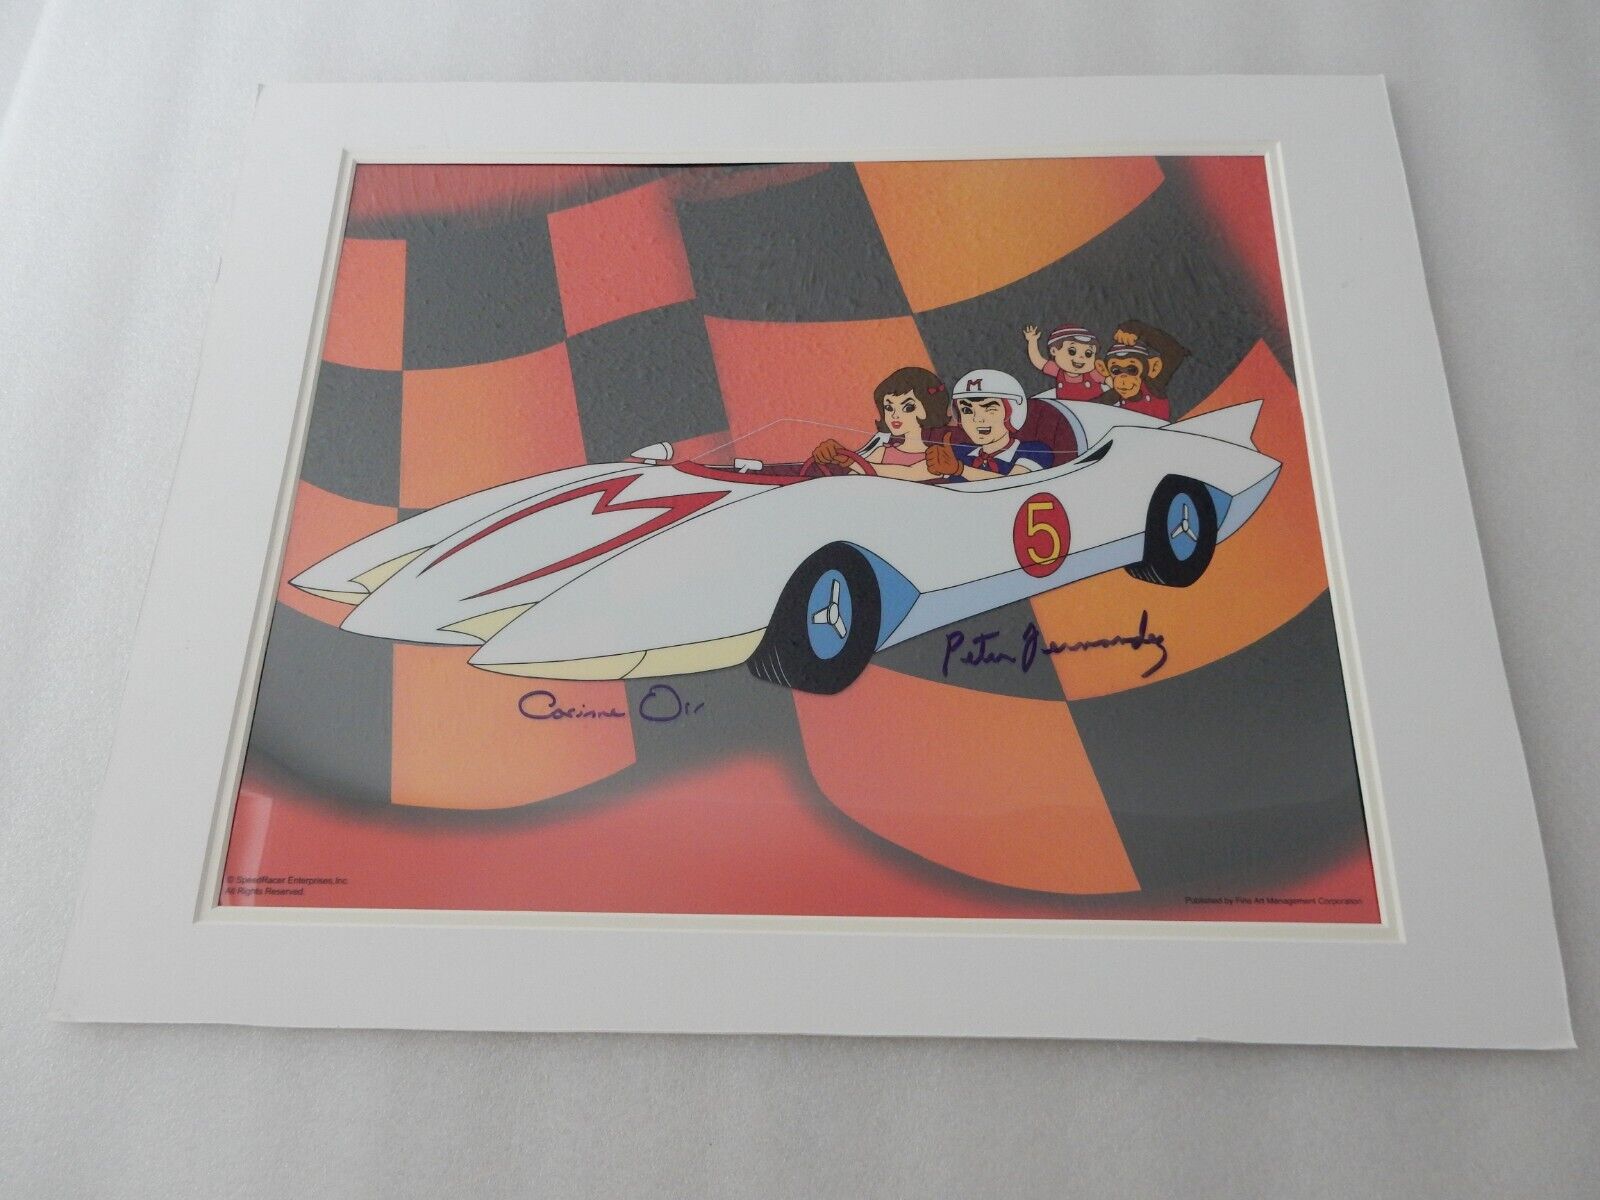 Go Speed Racer Animation Cel Artwork Signed Peter Fernandez and Caroline Orr